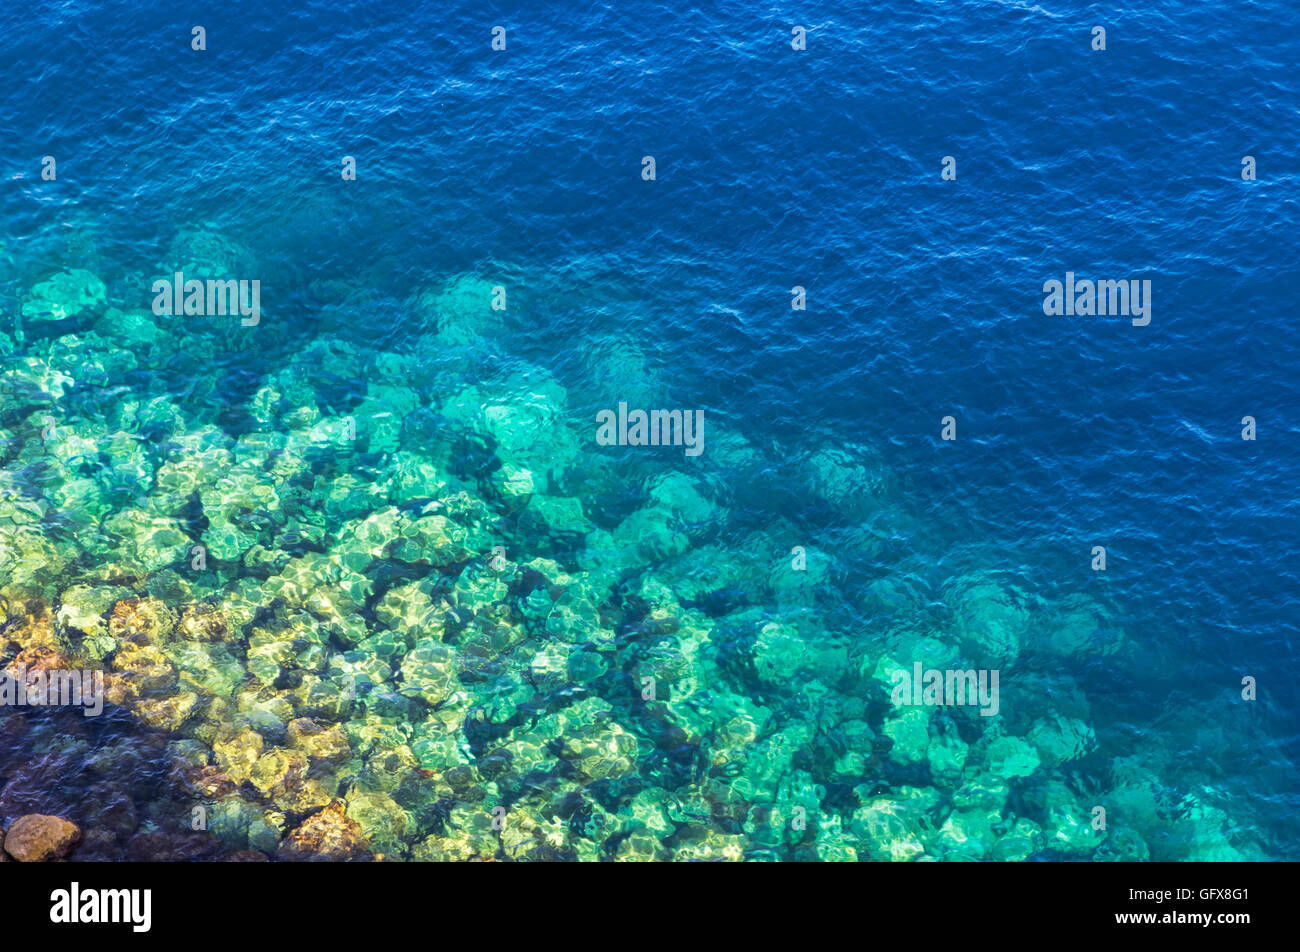 A l'arrière-plan clair et bleu azur de l'eau de mer. Vue de dessus Banque D'Images